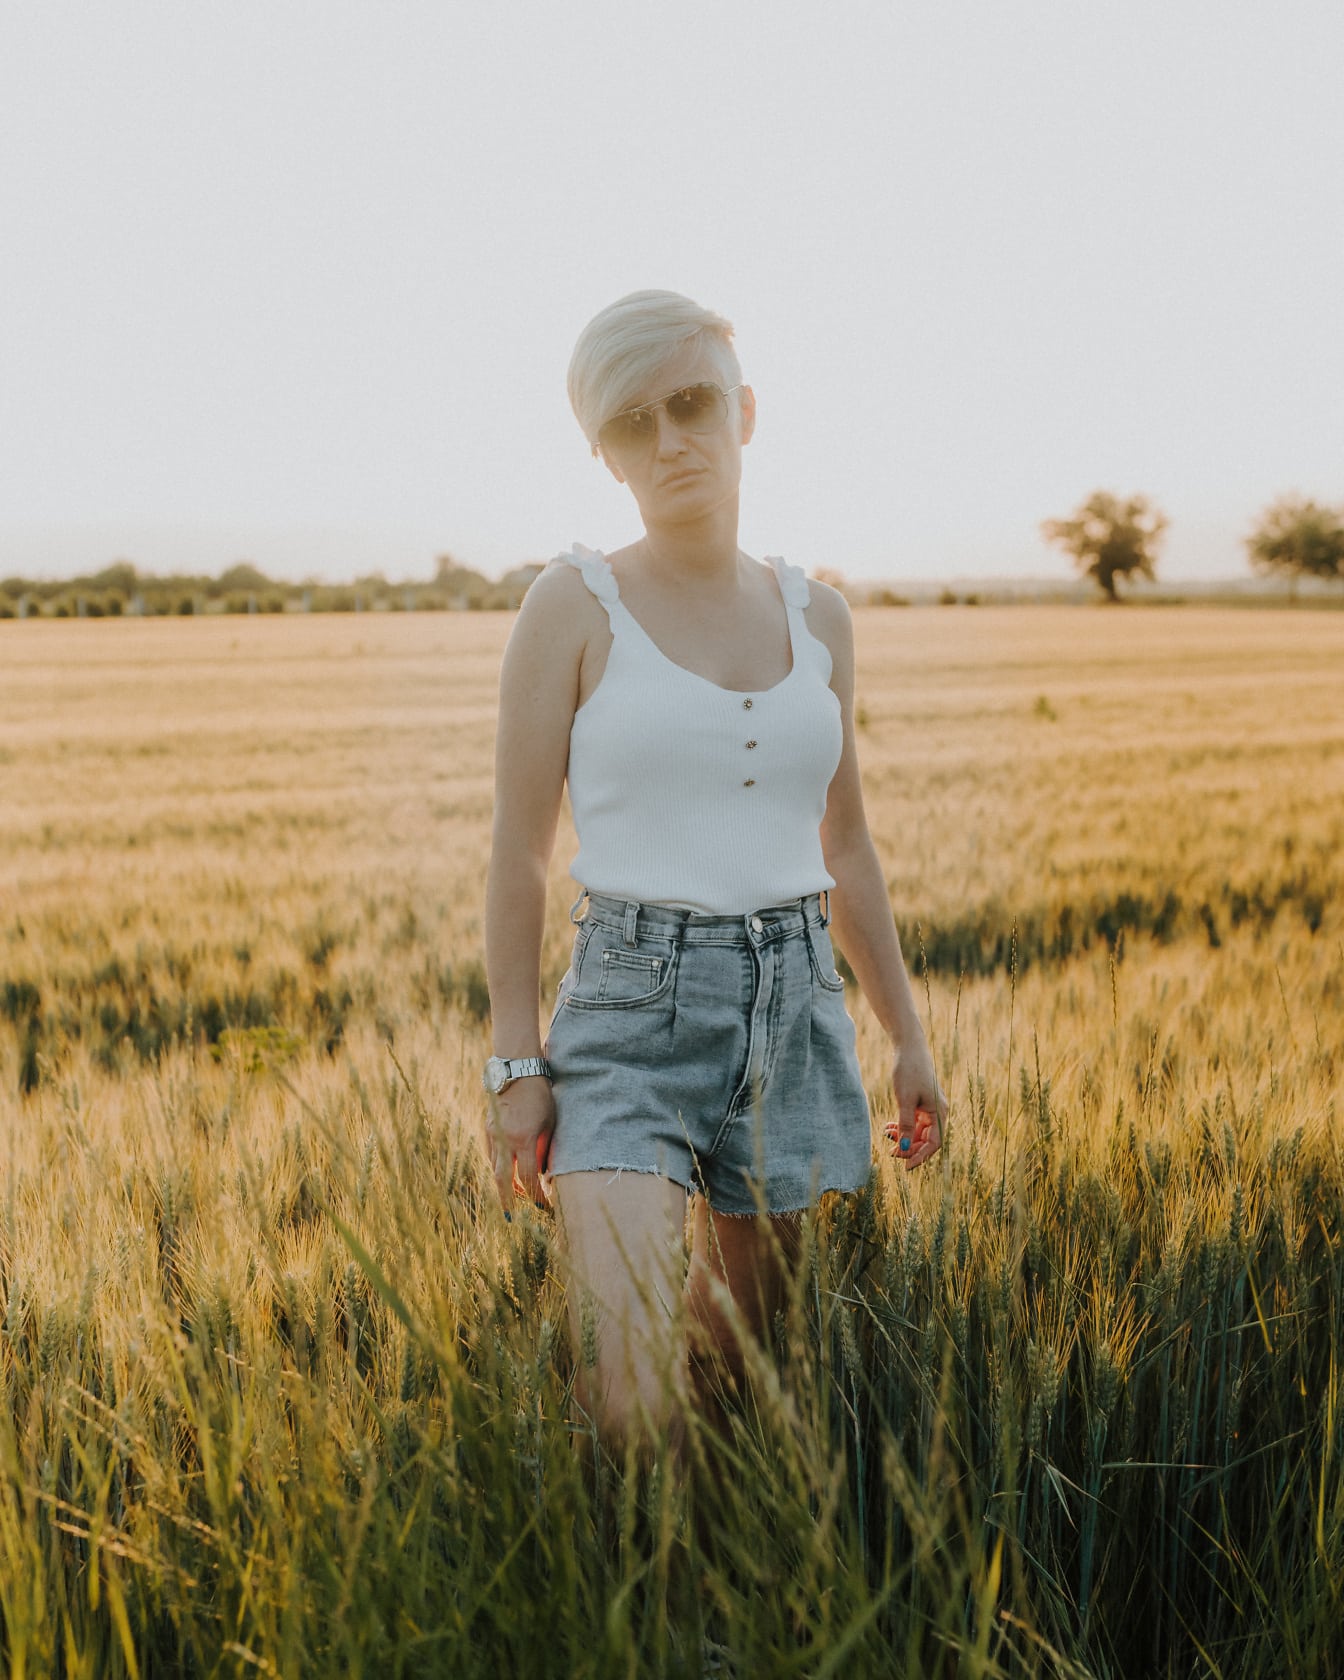 En korthåret kvinde i jeans, shorts og en hvid ærmeløs t-shirt står i en hvedemark;